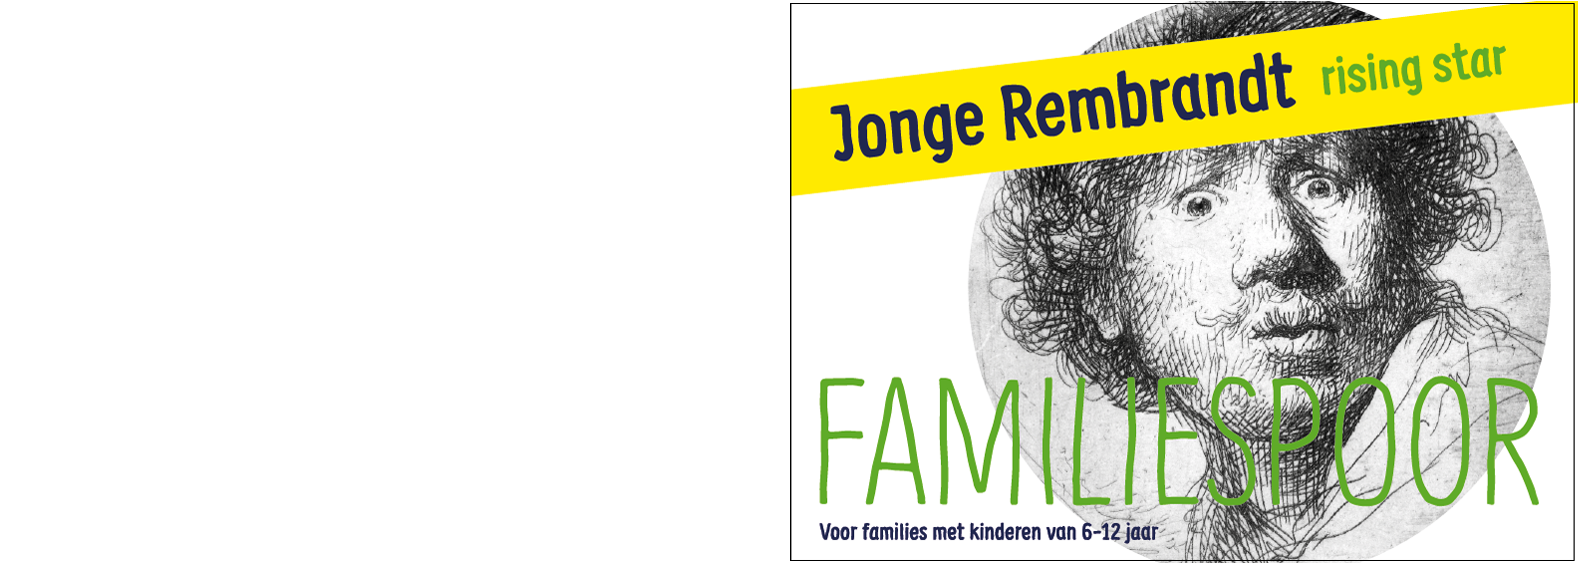 Ontwerpstudio Familiemusea Familiespoor Rembrandt Lakenhal voorzijde.png